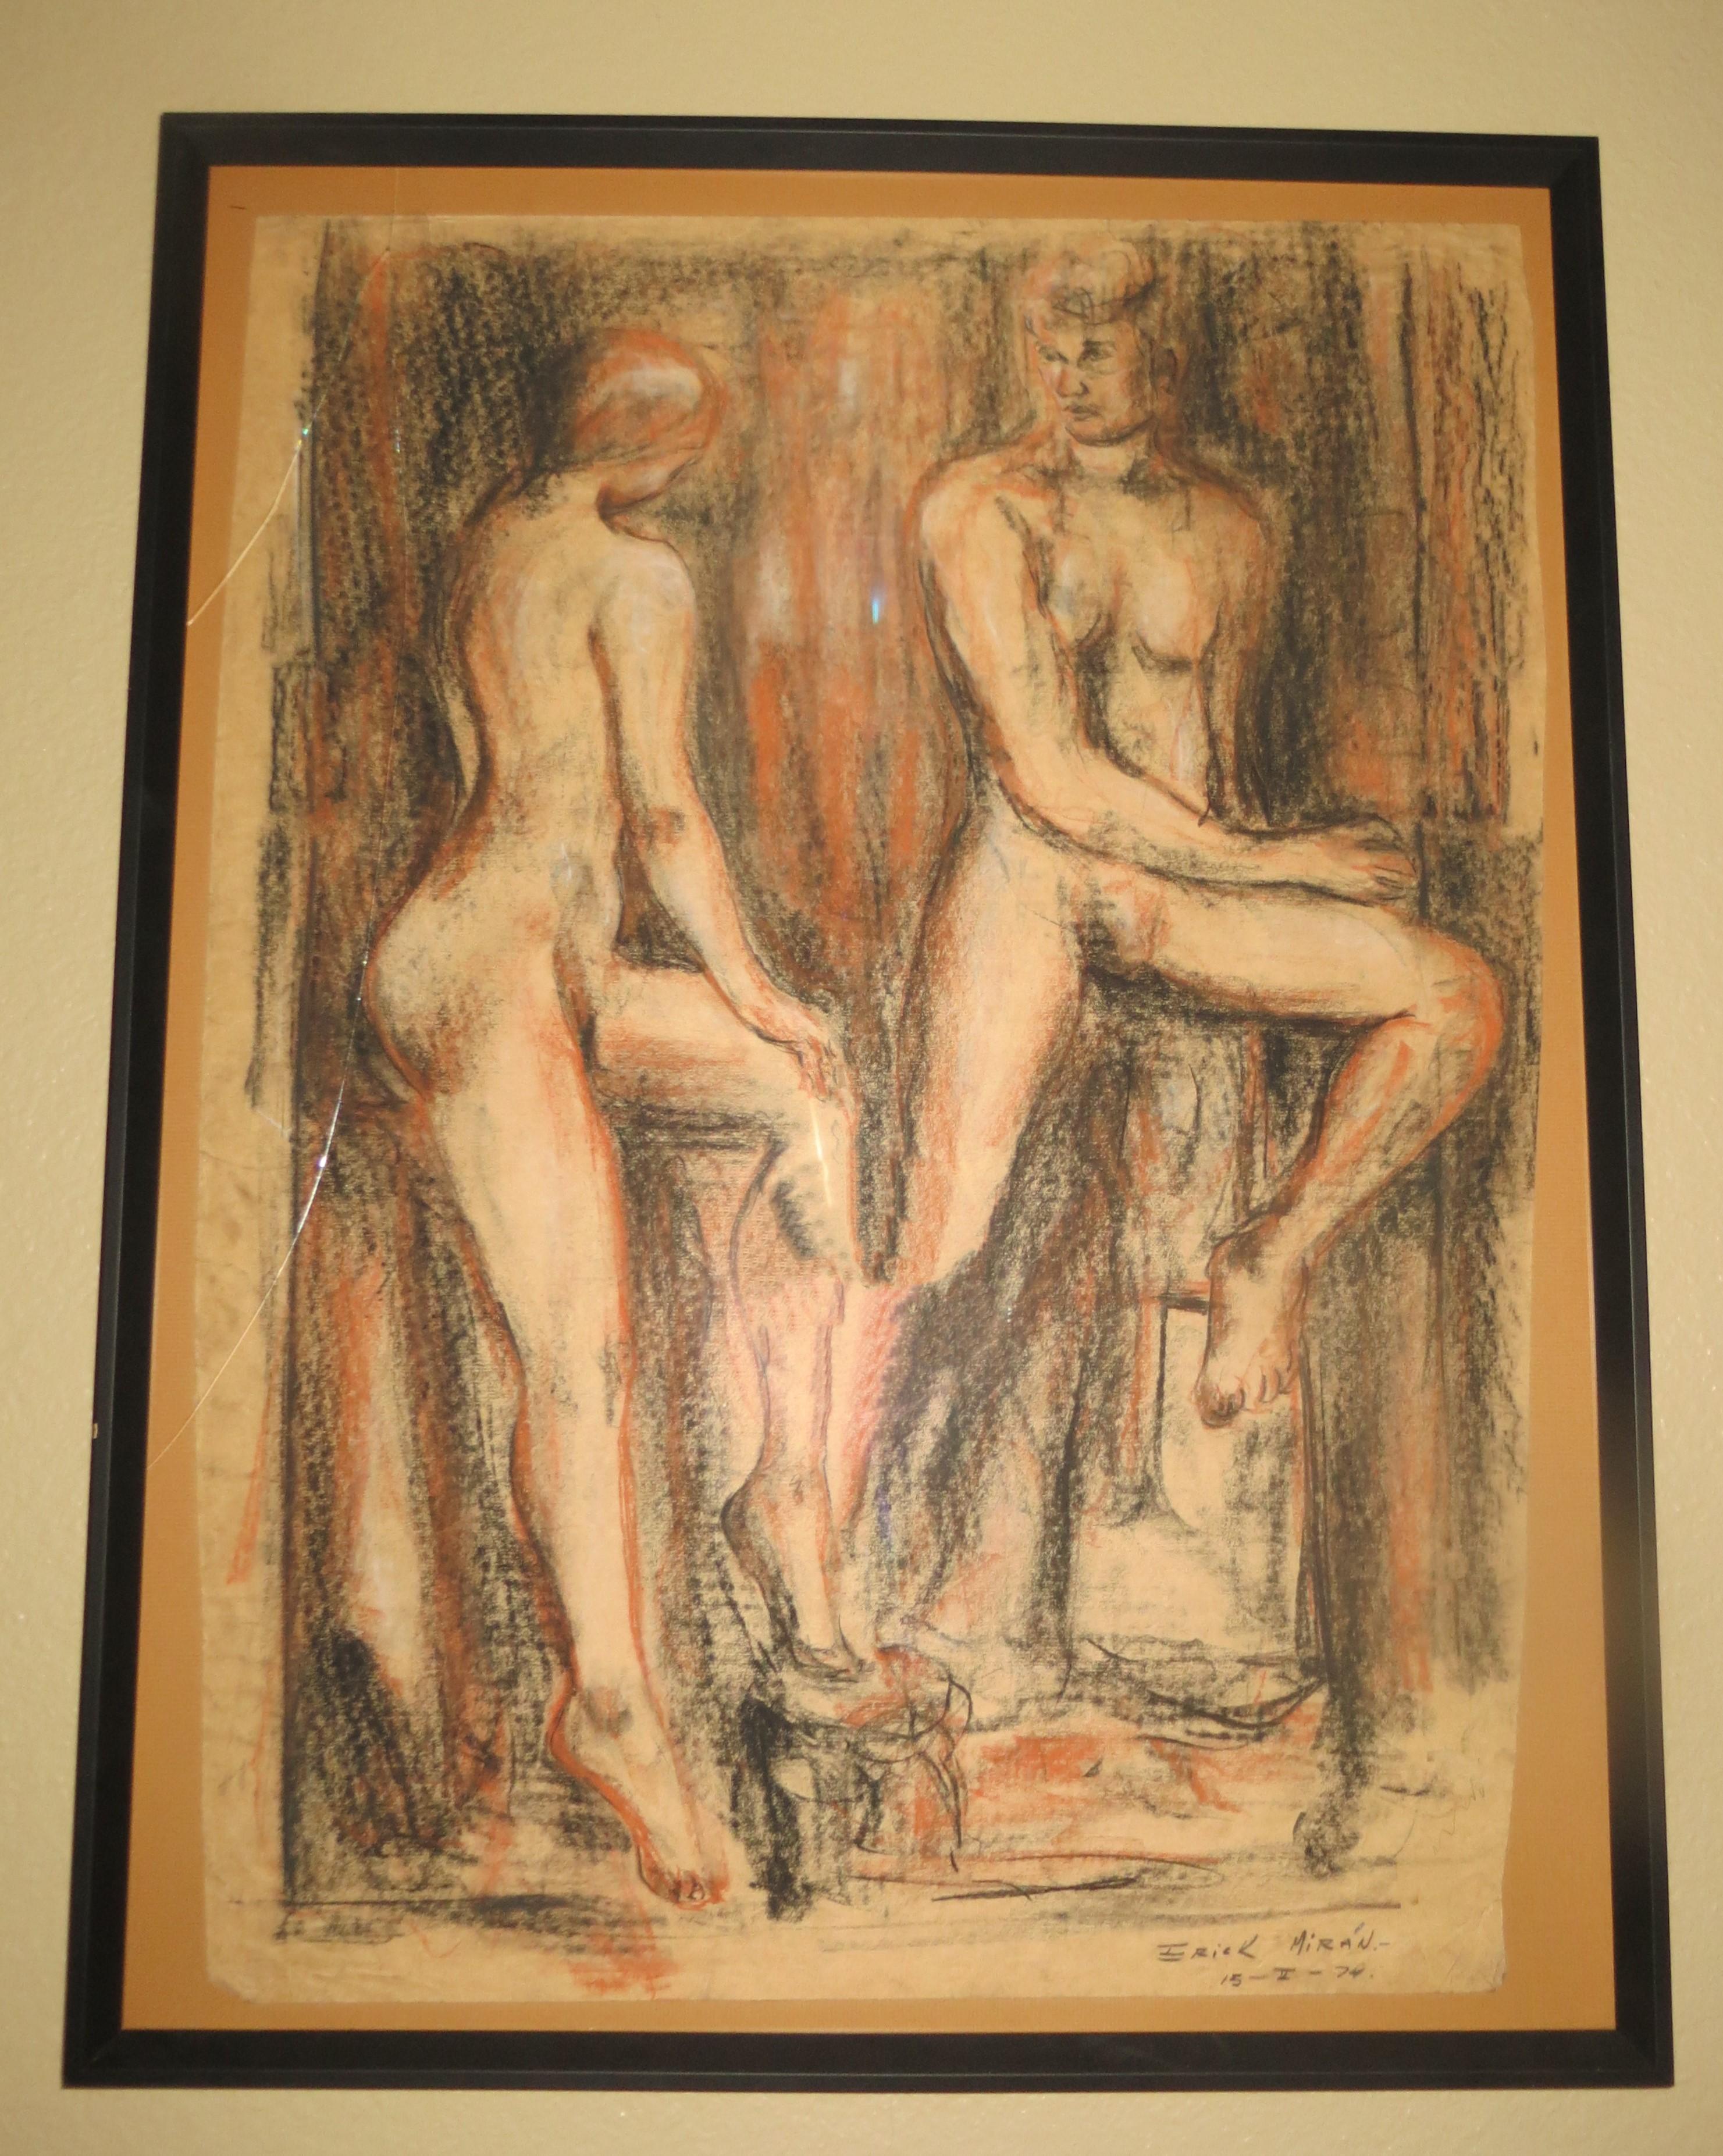 Unknown Nude – Paar nackte Paar, pastellfarbene Zeichnung, signiert Erik Miran 1976